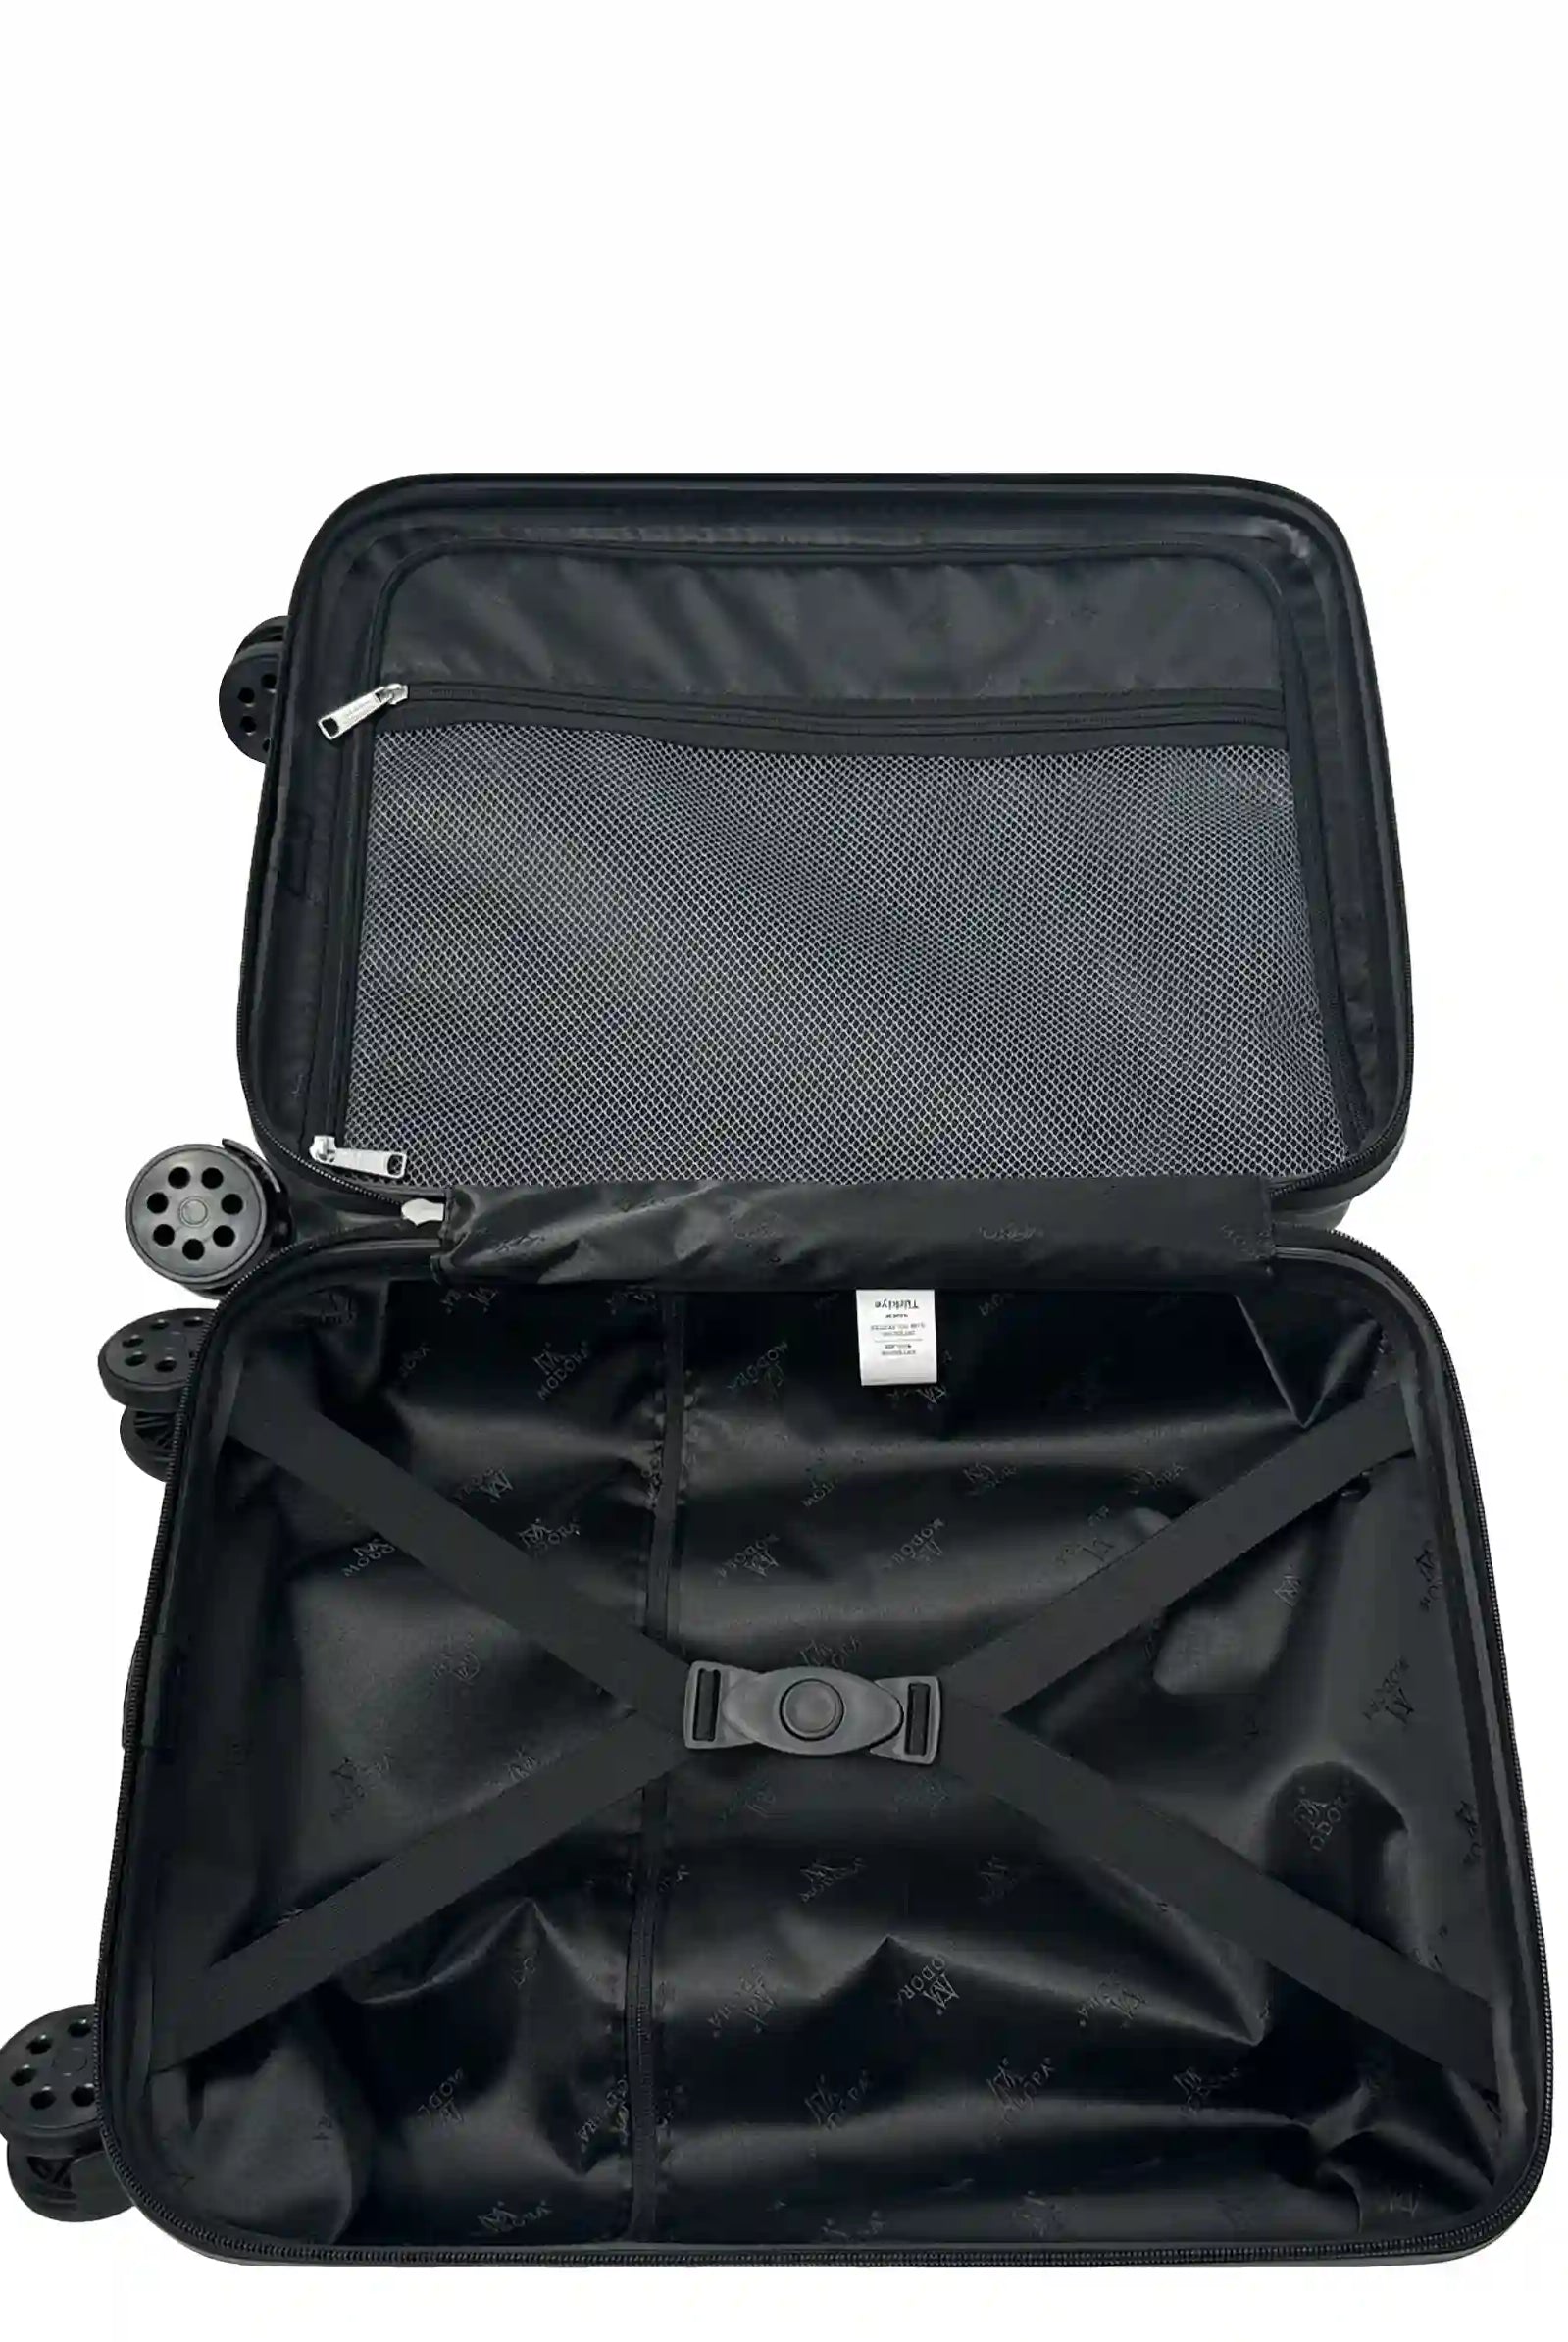 Vague black medium suitcase